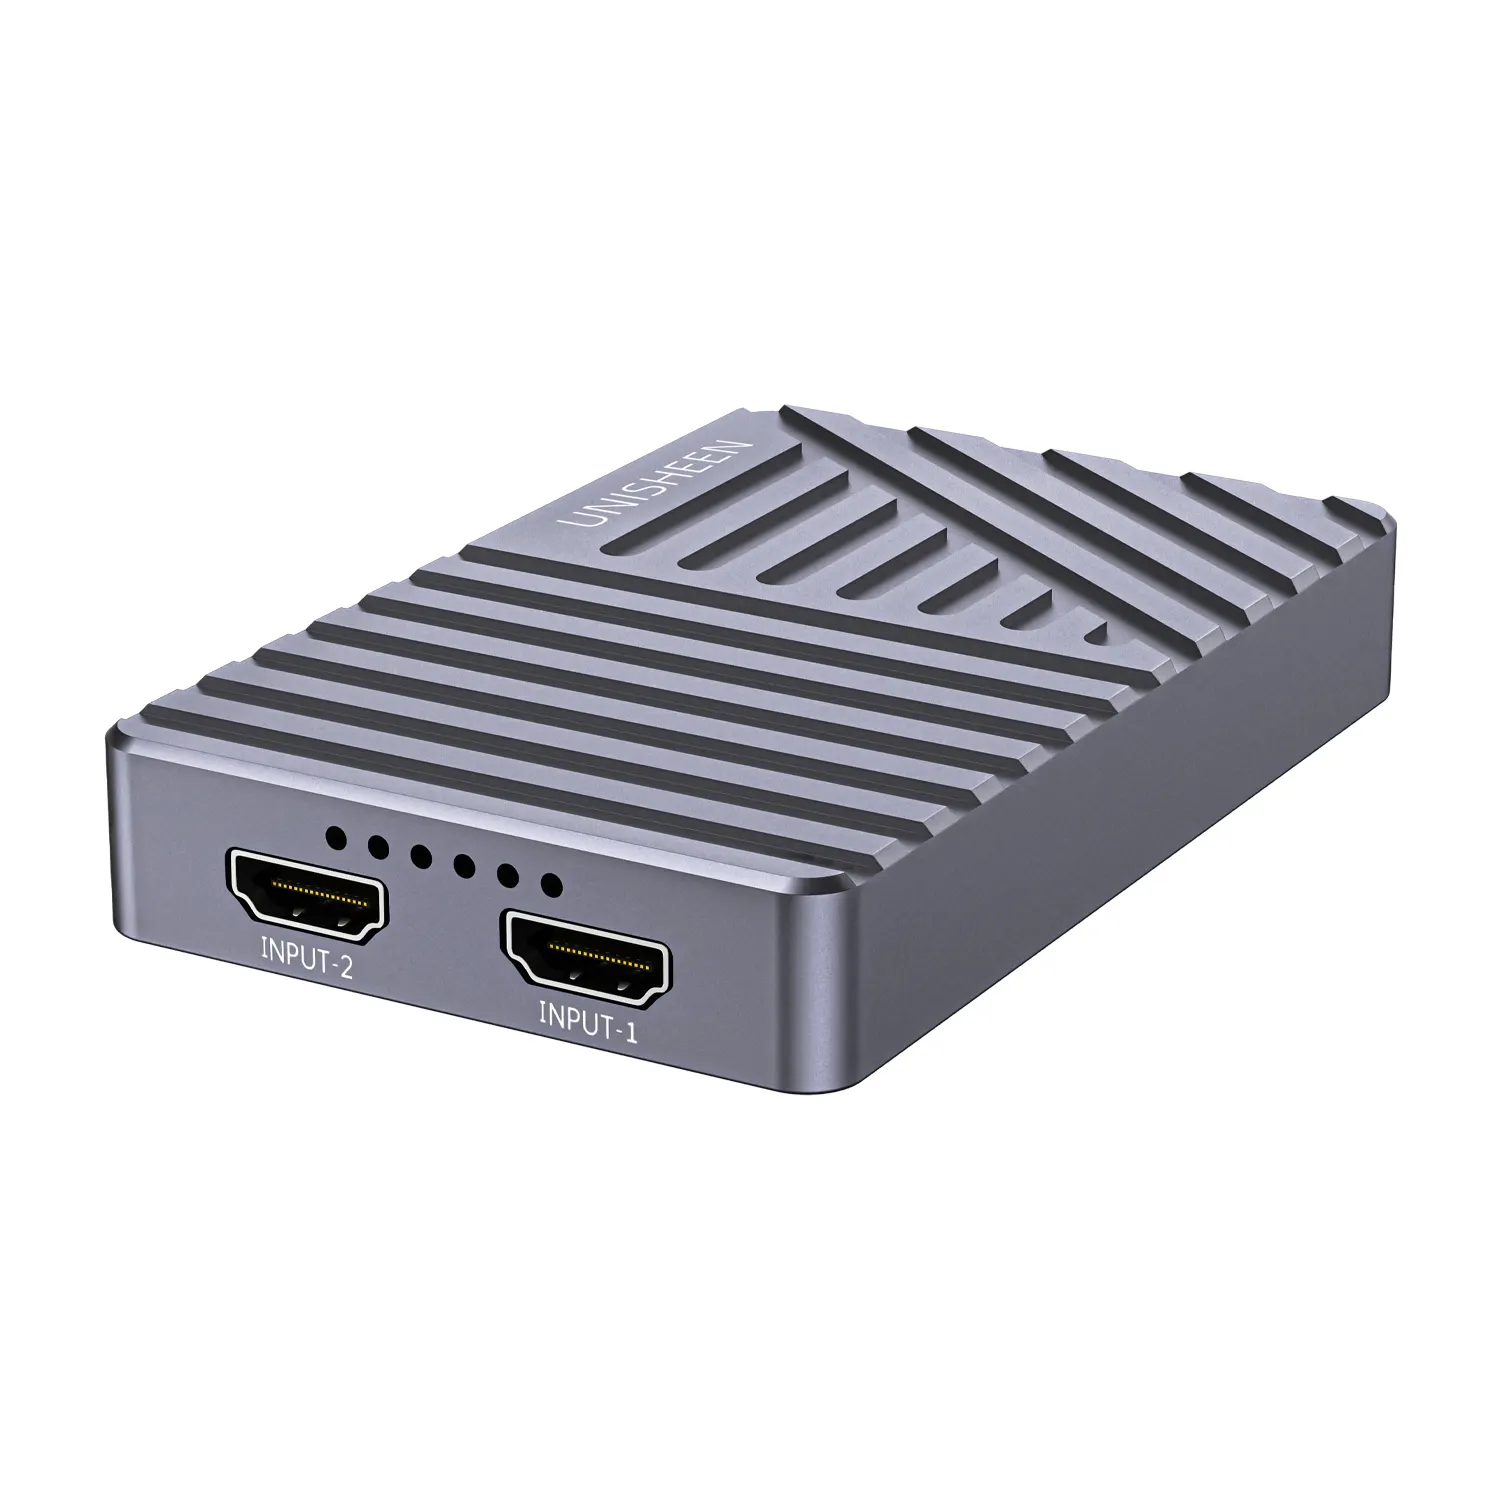 يونيشين USB 3.1 Gen2 للبث المباشر للألعاب OBS vMix Wirecast Xsplit USB3.0 60FPS مزدوج 4K HDMI بطاقة صندوق تصوير الفيديو